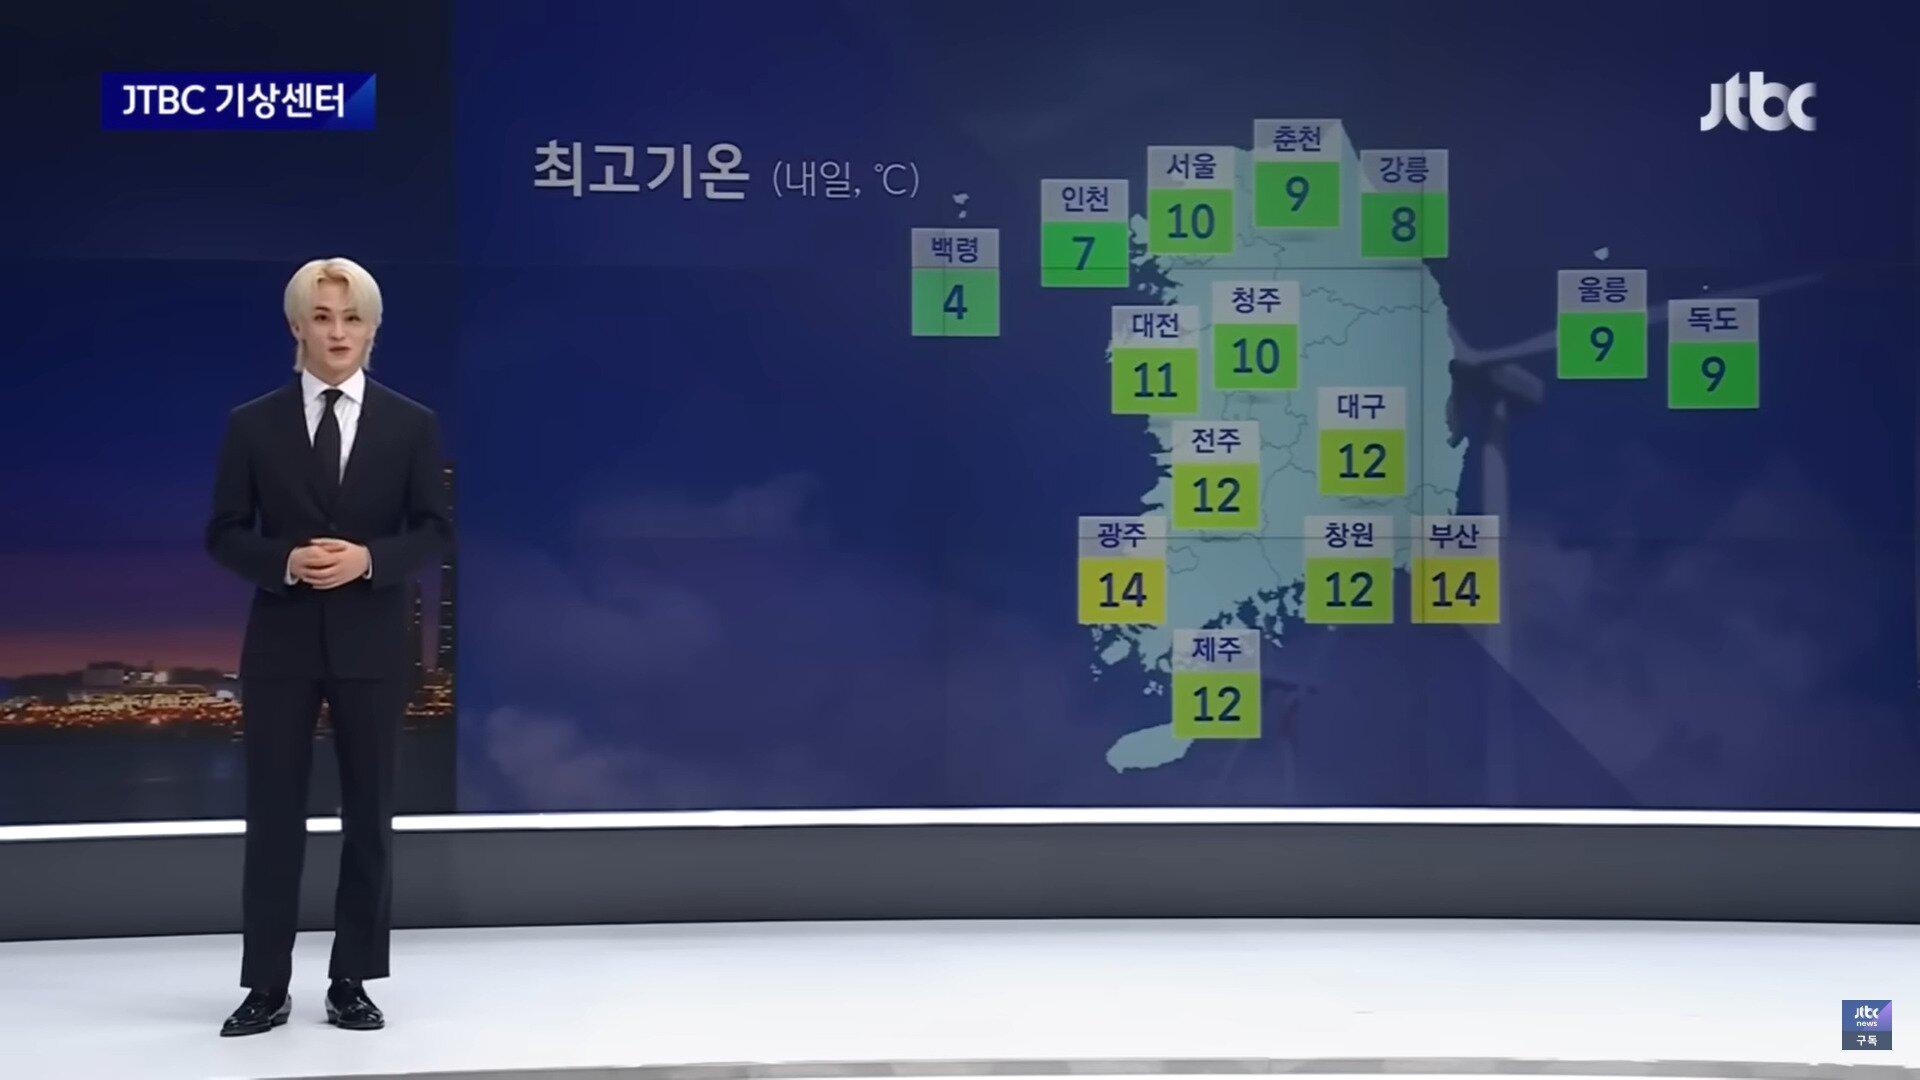 Mark dẫn dắt bản tin thời tiết một cách đầy tự tin và chuyên nghiệp trên "JTBC Newsroom" (Ảnh: JTBC)